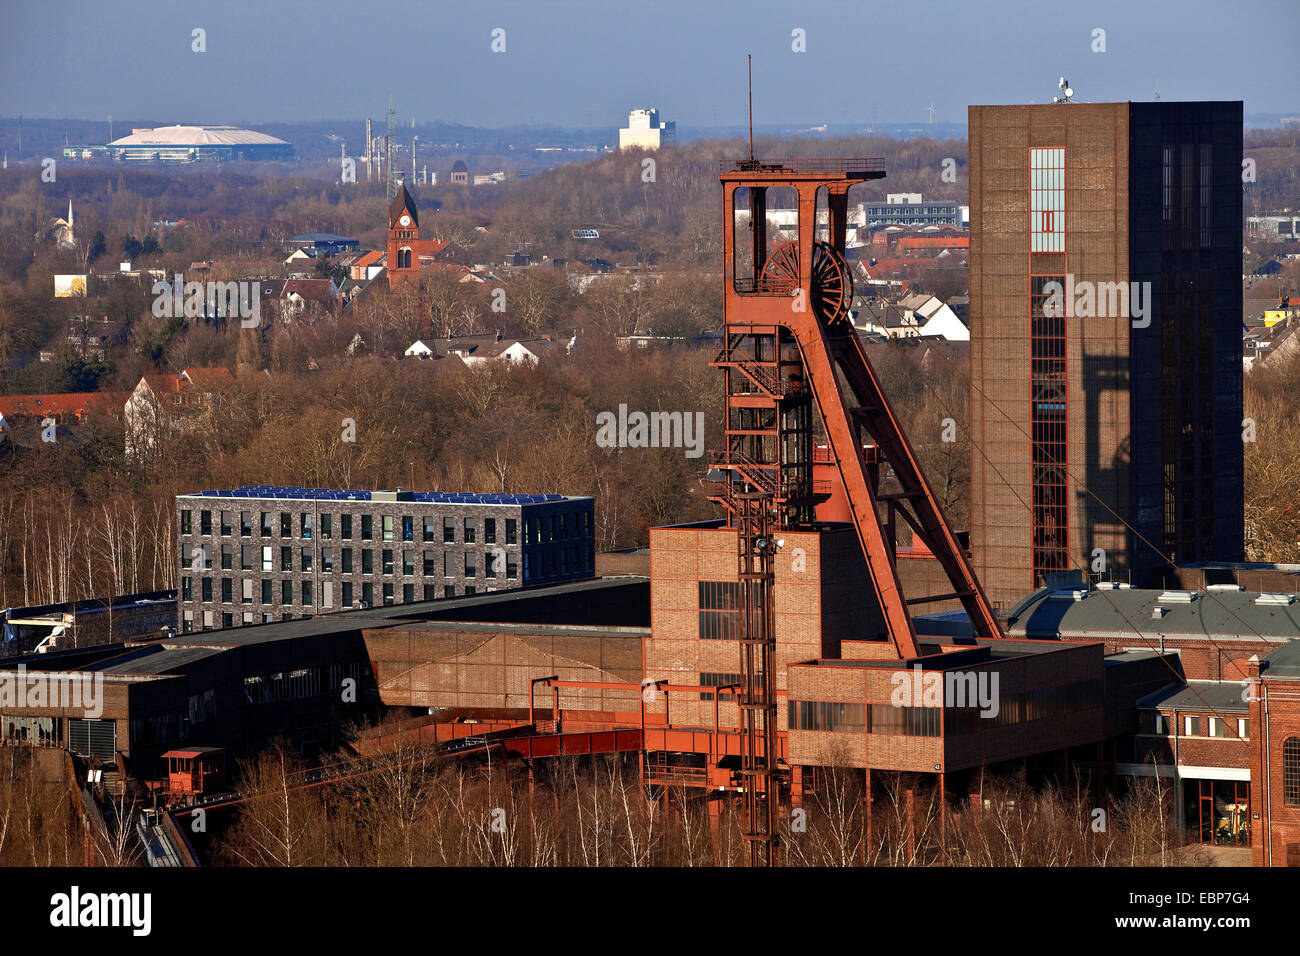 Vista desde la mina de carbón Zollverein Complejo Industrial a Veltins-Arena, Alemania, Renania del Norte-Westfalia, área de Ruhr, Essen Foto de stock